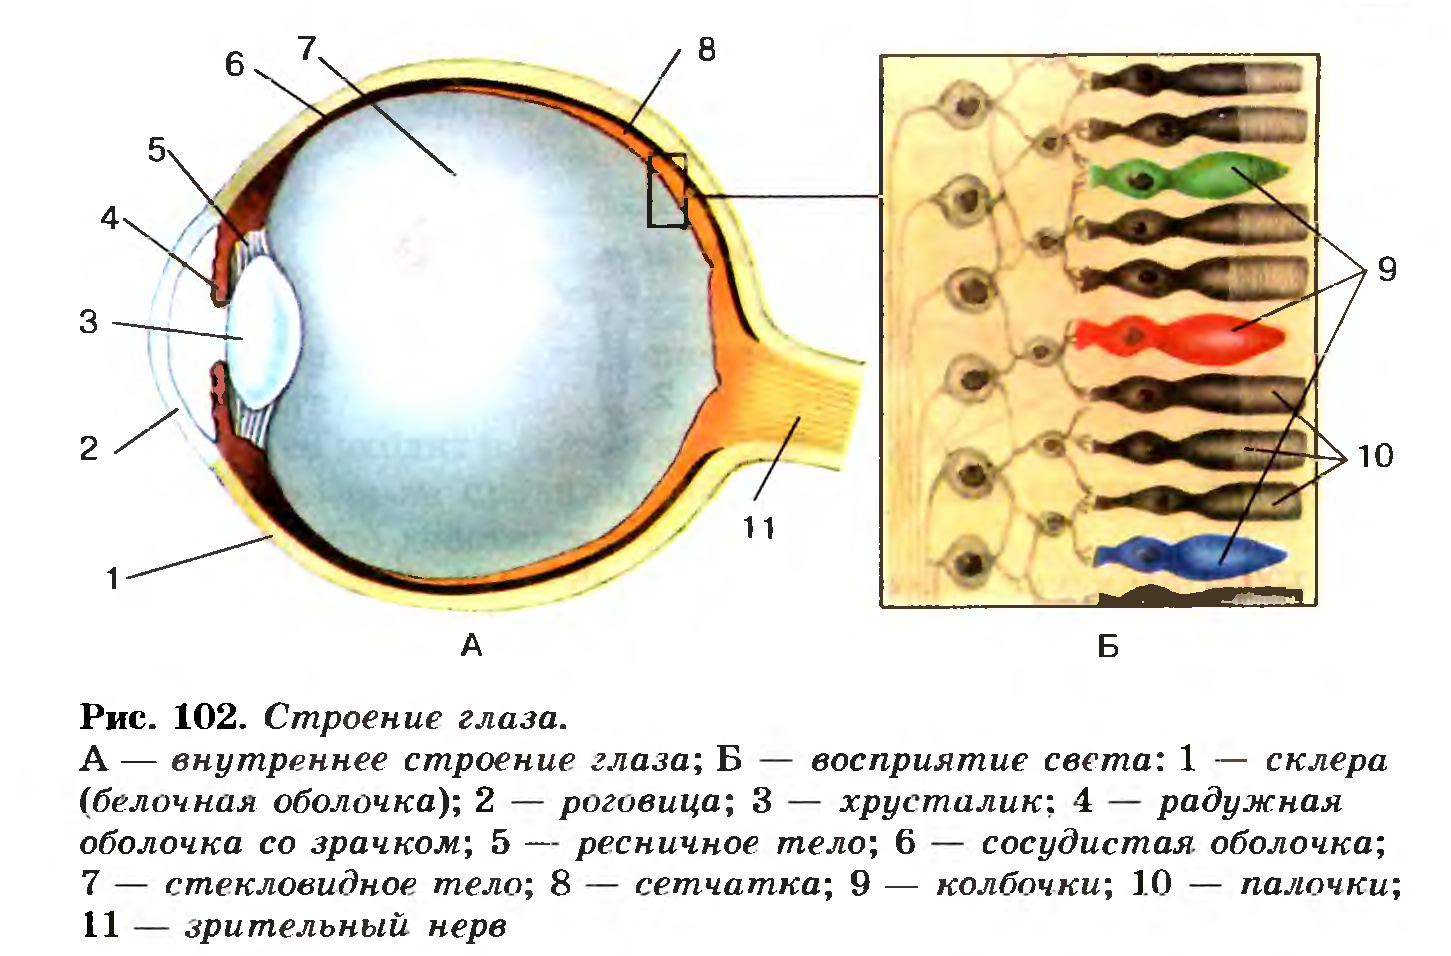 4 колбочки зрение. Строение глаза колбочки и палочки. Строение глазного яблока биология 8 класс. Биология 8 класс структура глаза человека. Палочки и колбочки сетчатки глаза расположены.